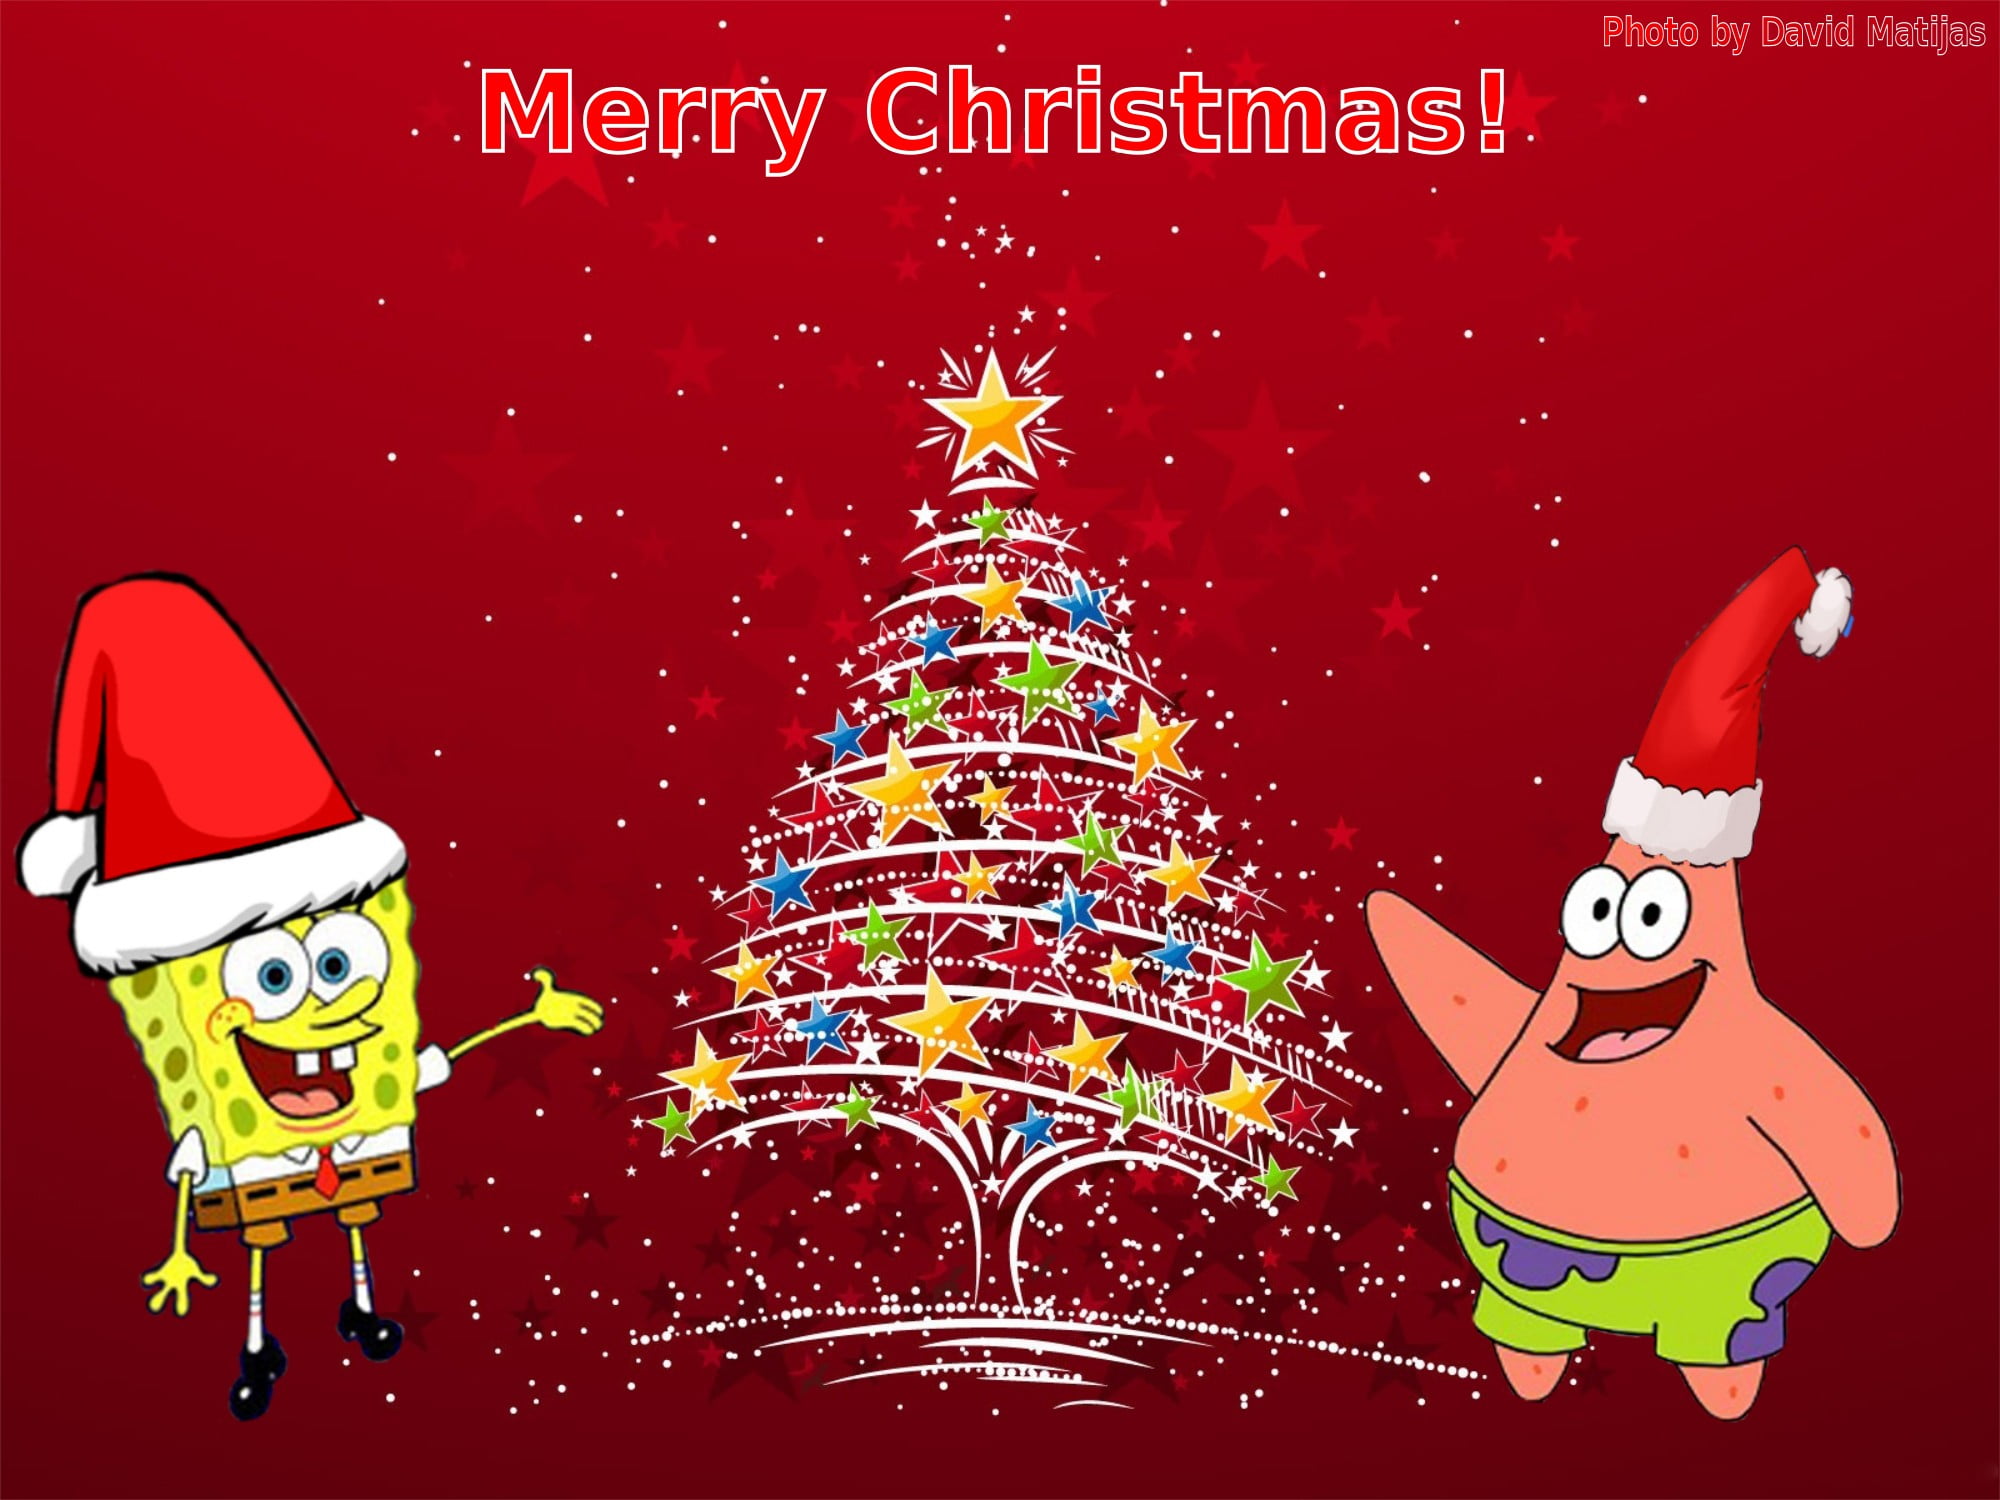 SpongeBob Squarepants and Patrick Star, Christmas, SpongeBob SquarePants